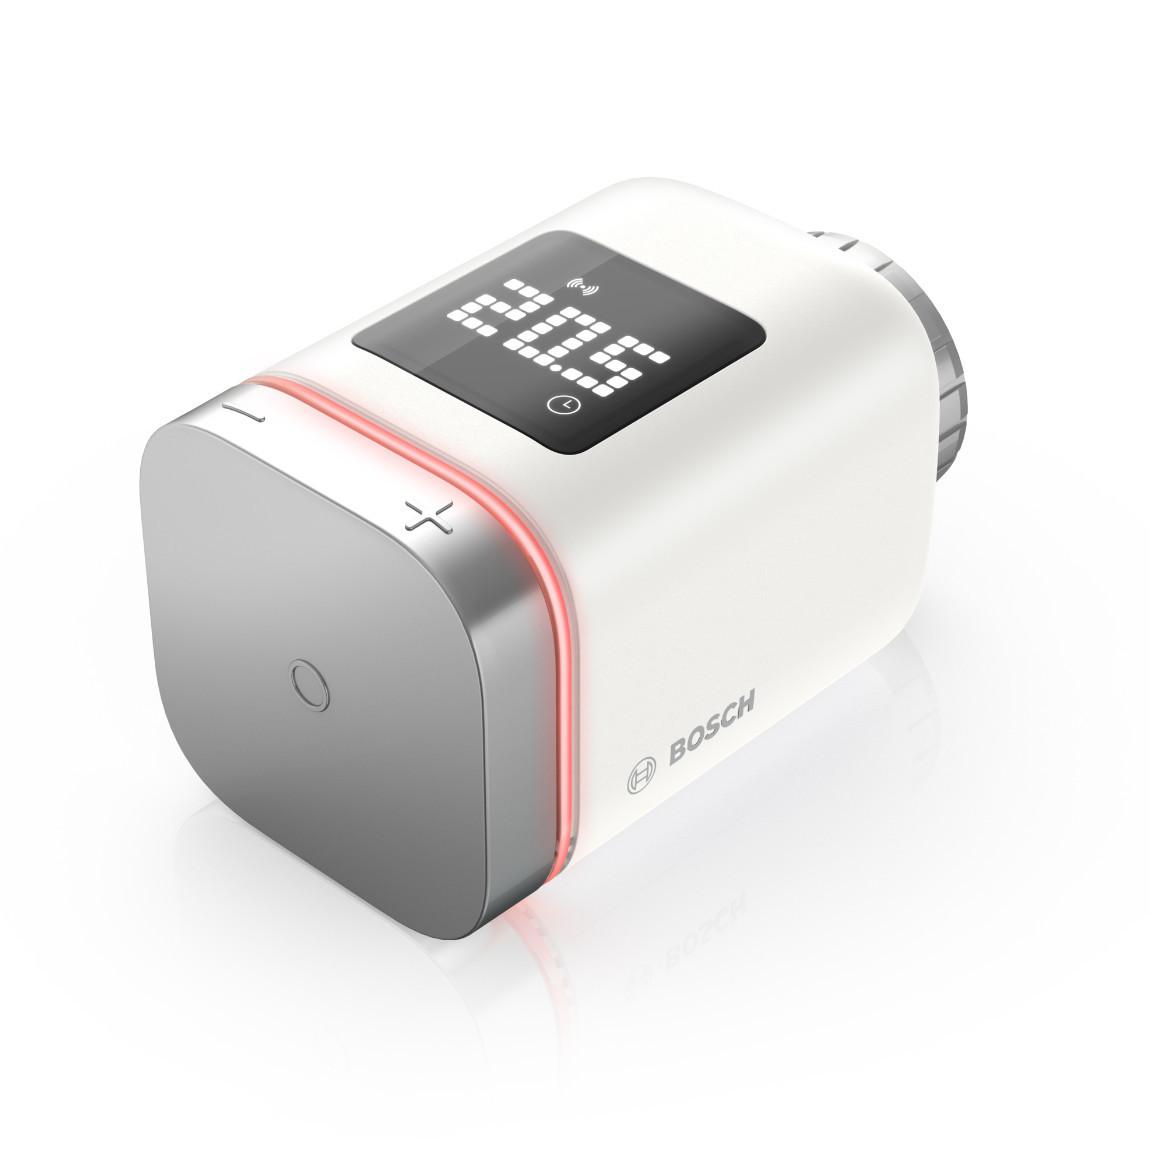 Bosch Smart Home Heizkörper-Thermostat II 6er-Set_schraeg rote LED